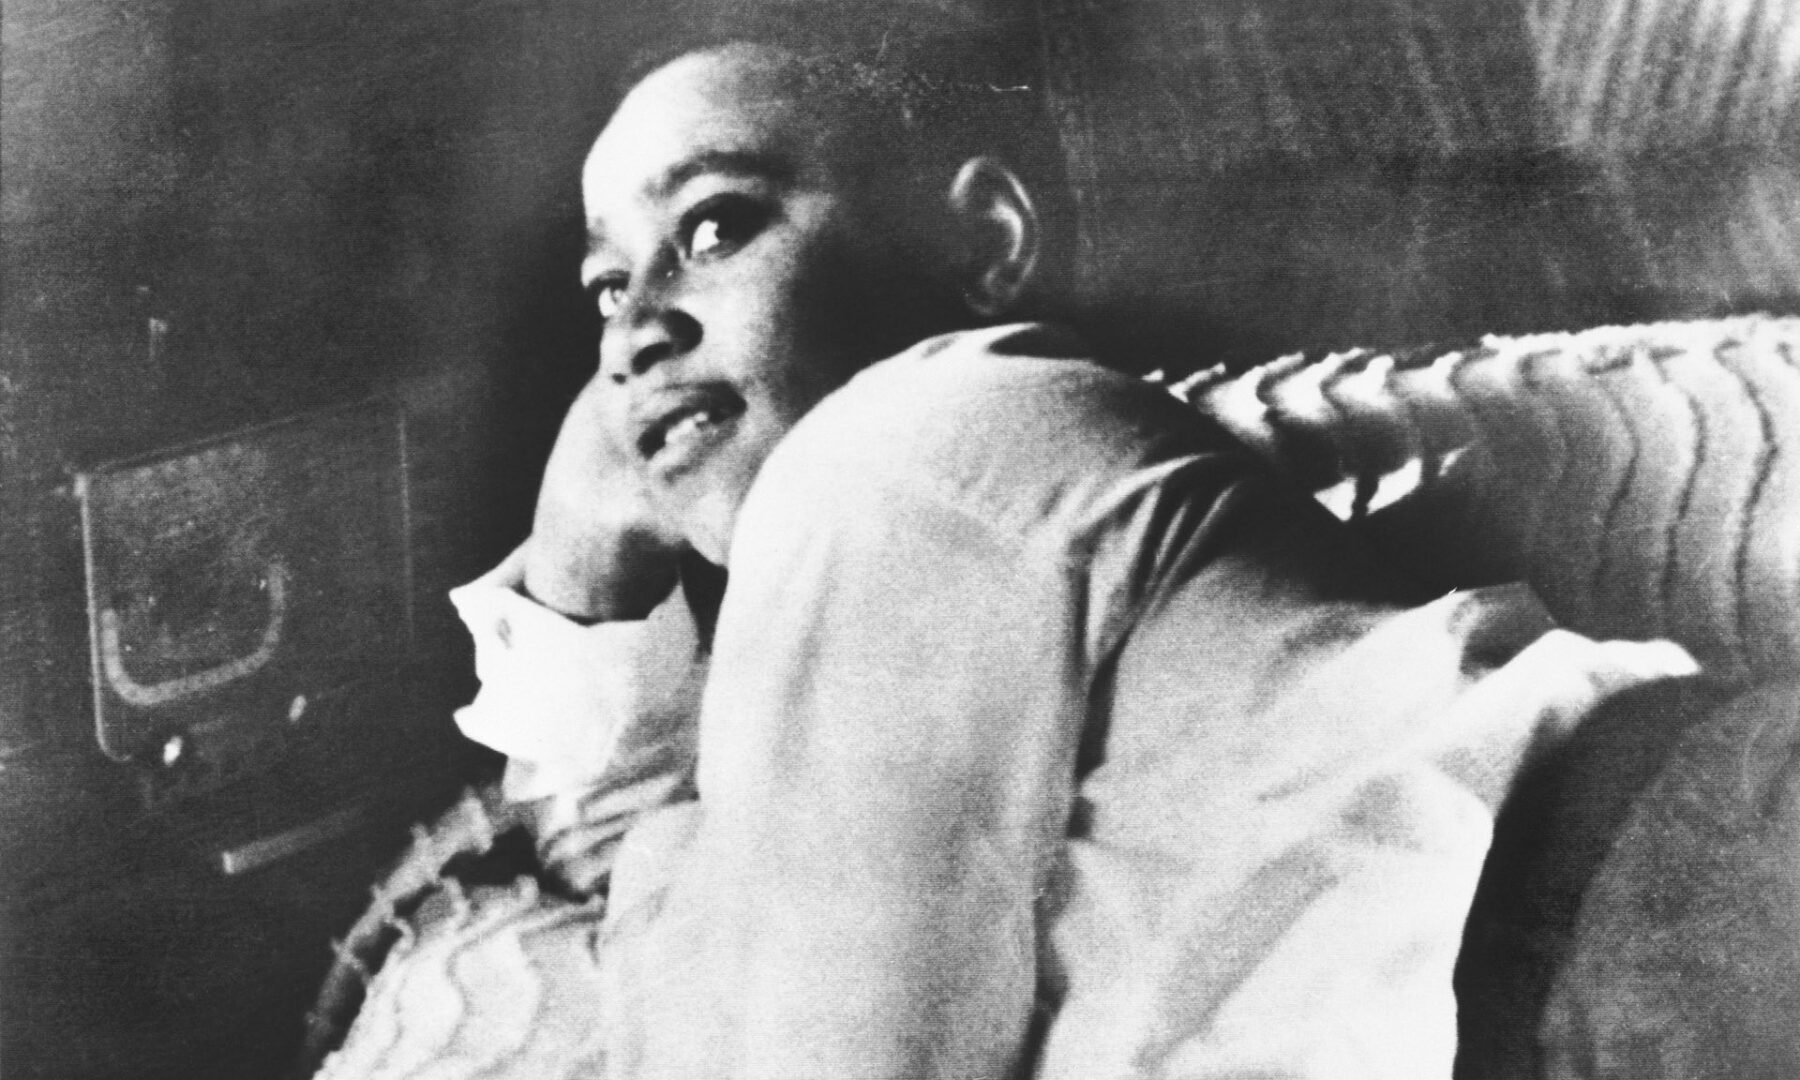 EE.UU. cierra investigación sobre asesinato racista de un menor negro en 1955